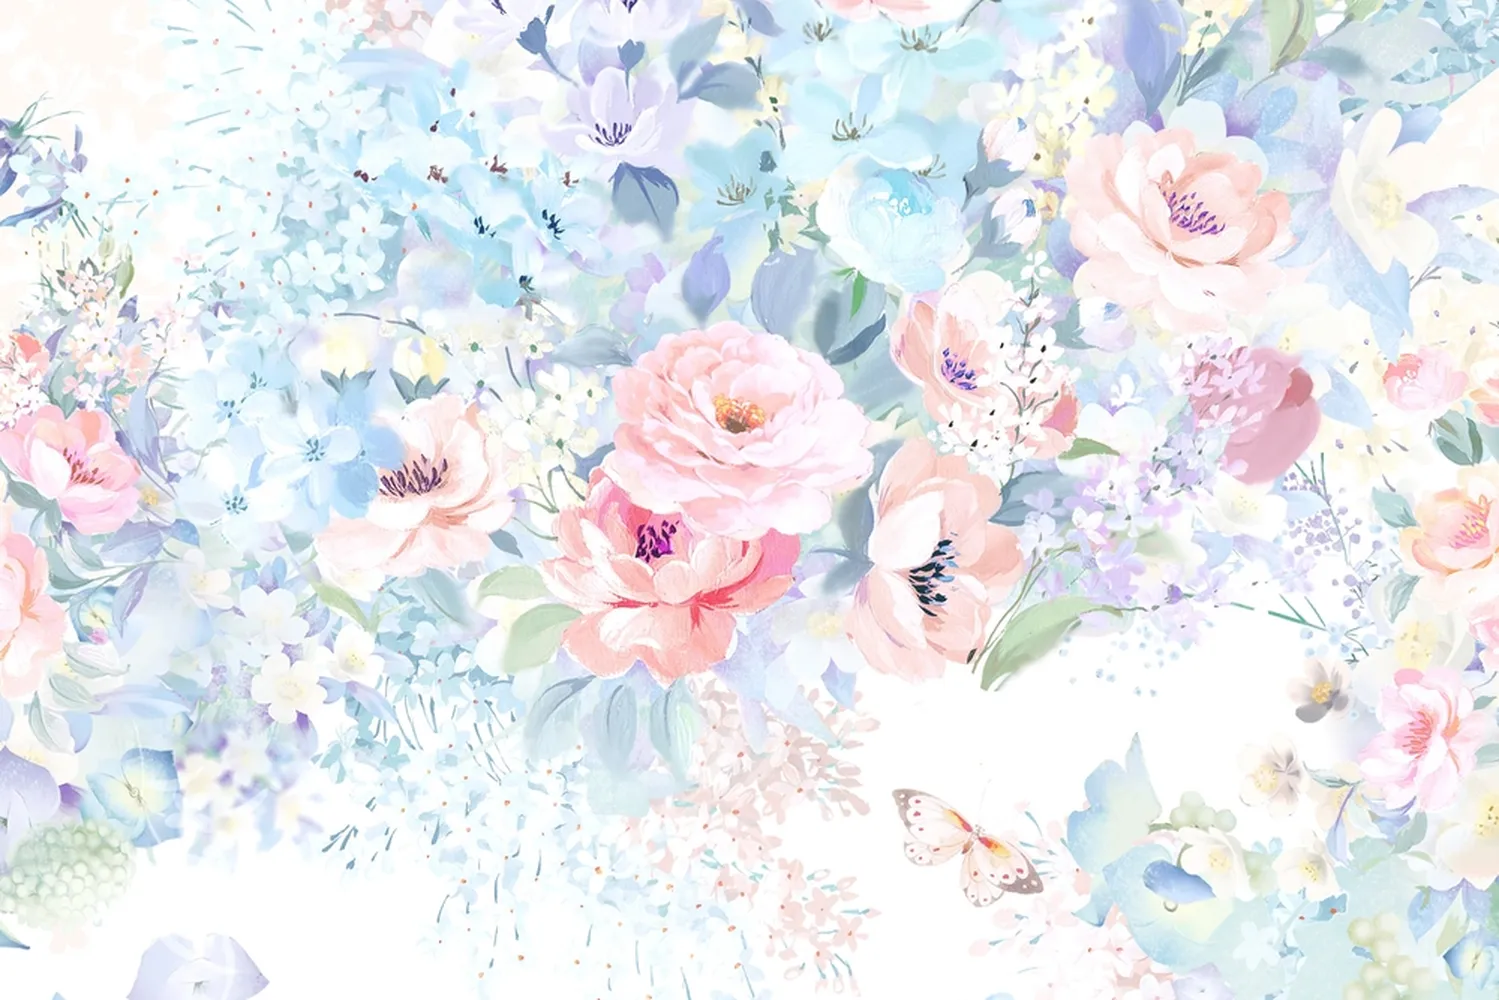 پوستر دیواری سه بعدی اتاق خواب عروس و داماد طرح گل و پروانه